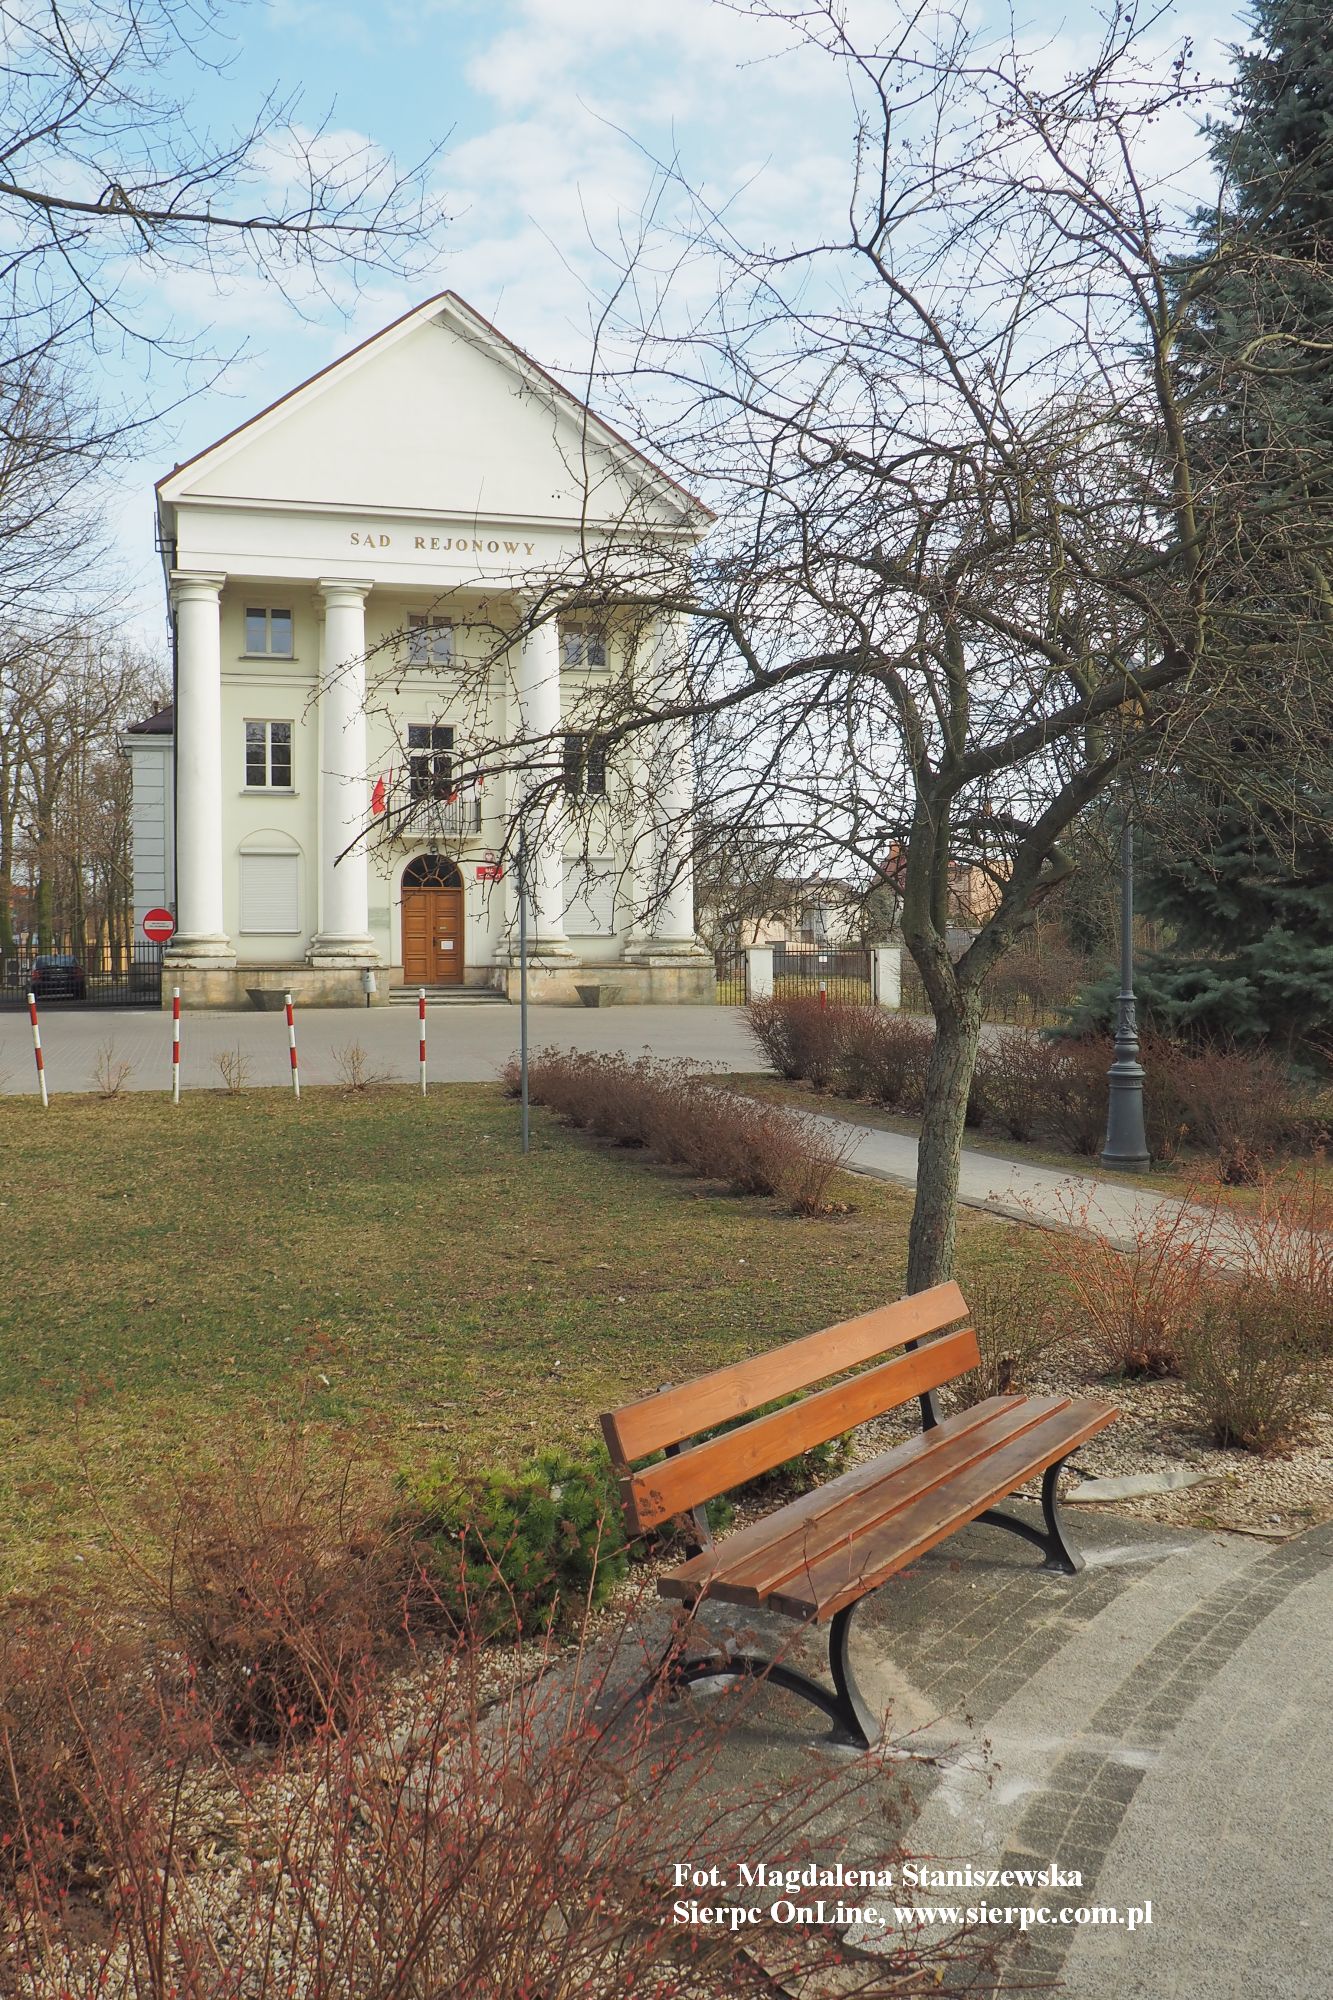 Gmach Sdu Rejonowego, dawniej cerkwi w Sierpcu, w Parku im. Janusza Korczaka, 27.03.2022 r.